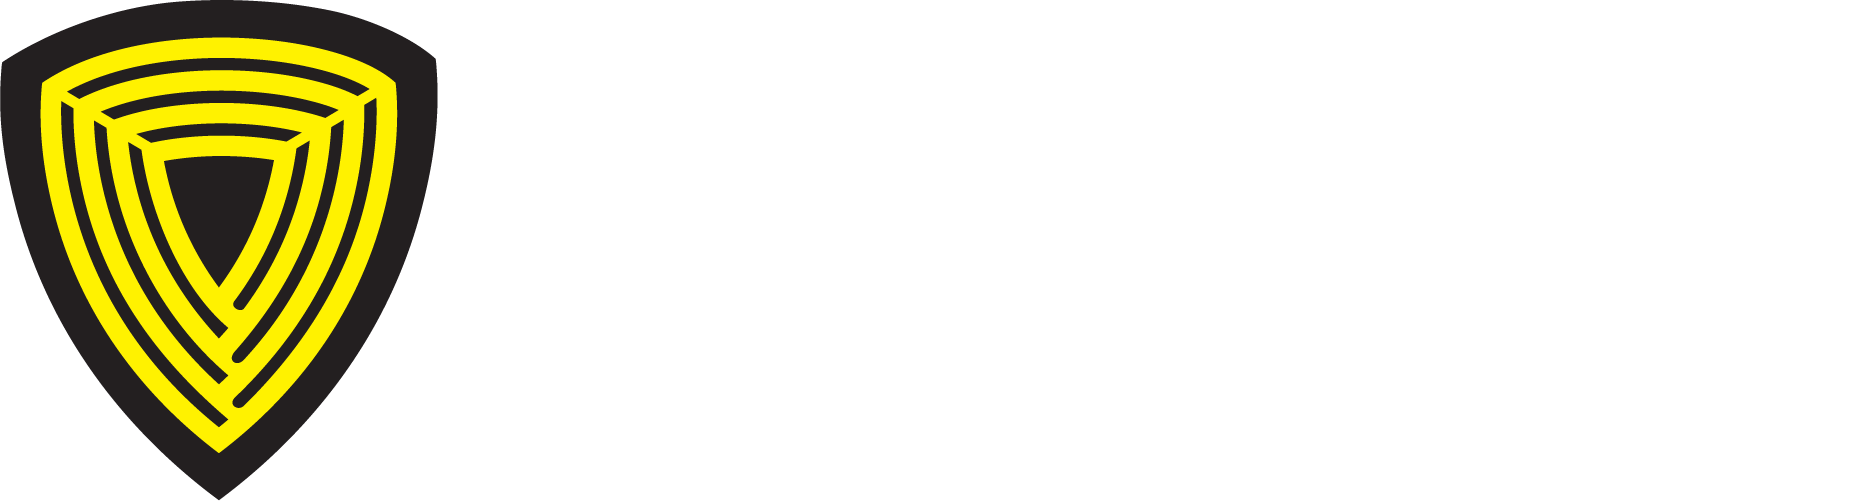 Safety Rail Co. The Safest